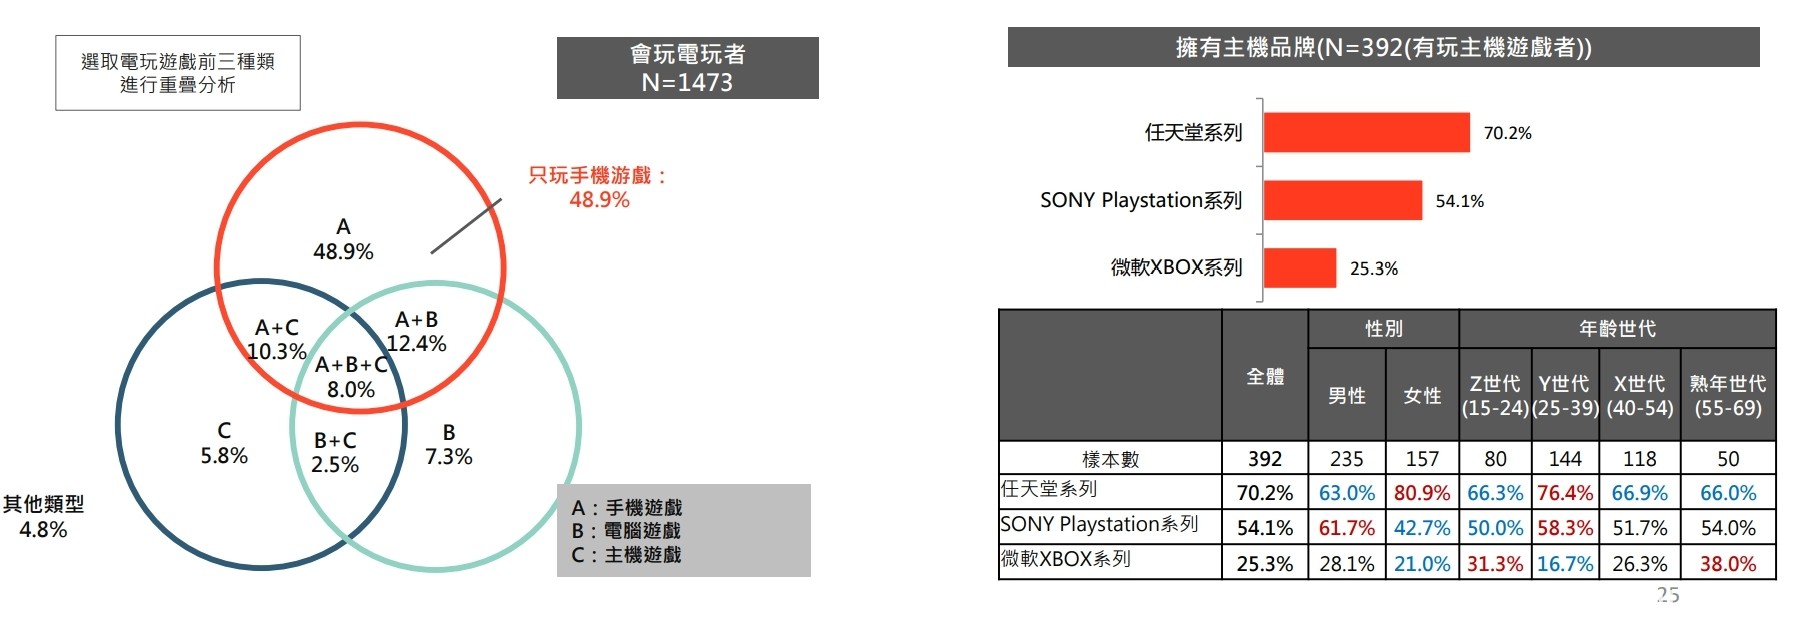 文策院發表文化內容消費趨勢調查 台灣手遊玩家人數眾多、付費比率 26.6%